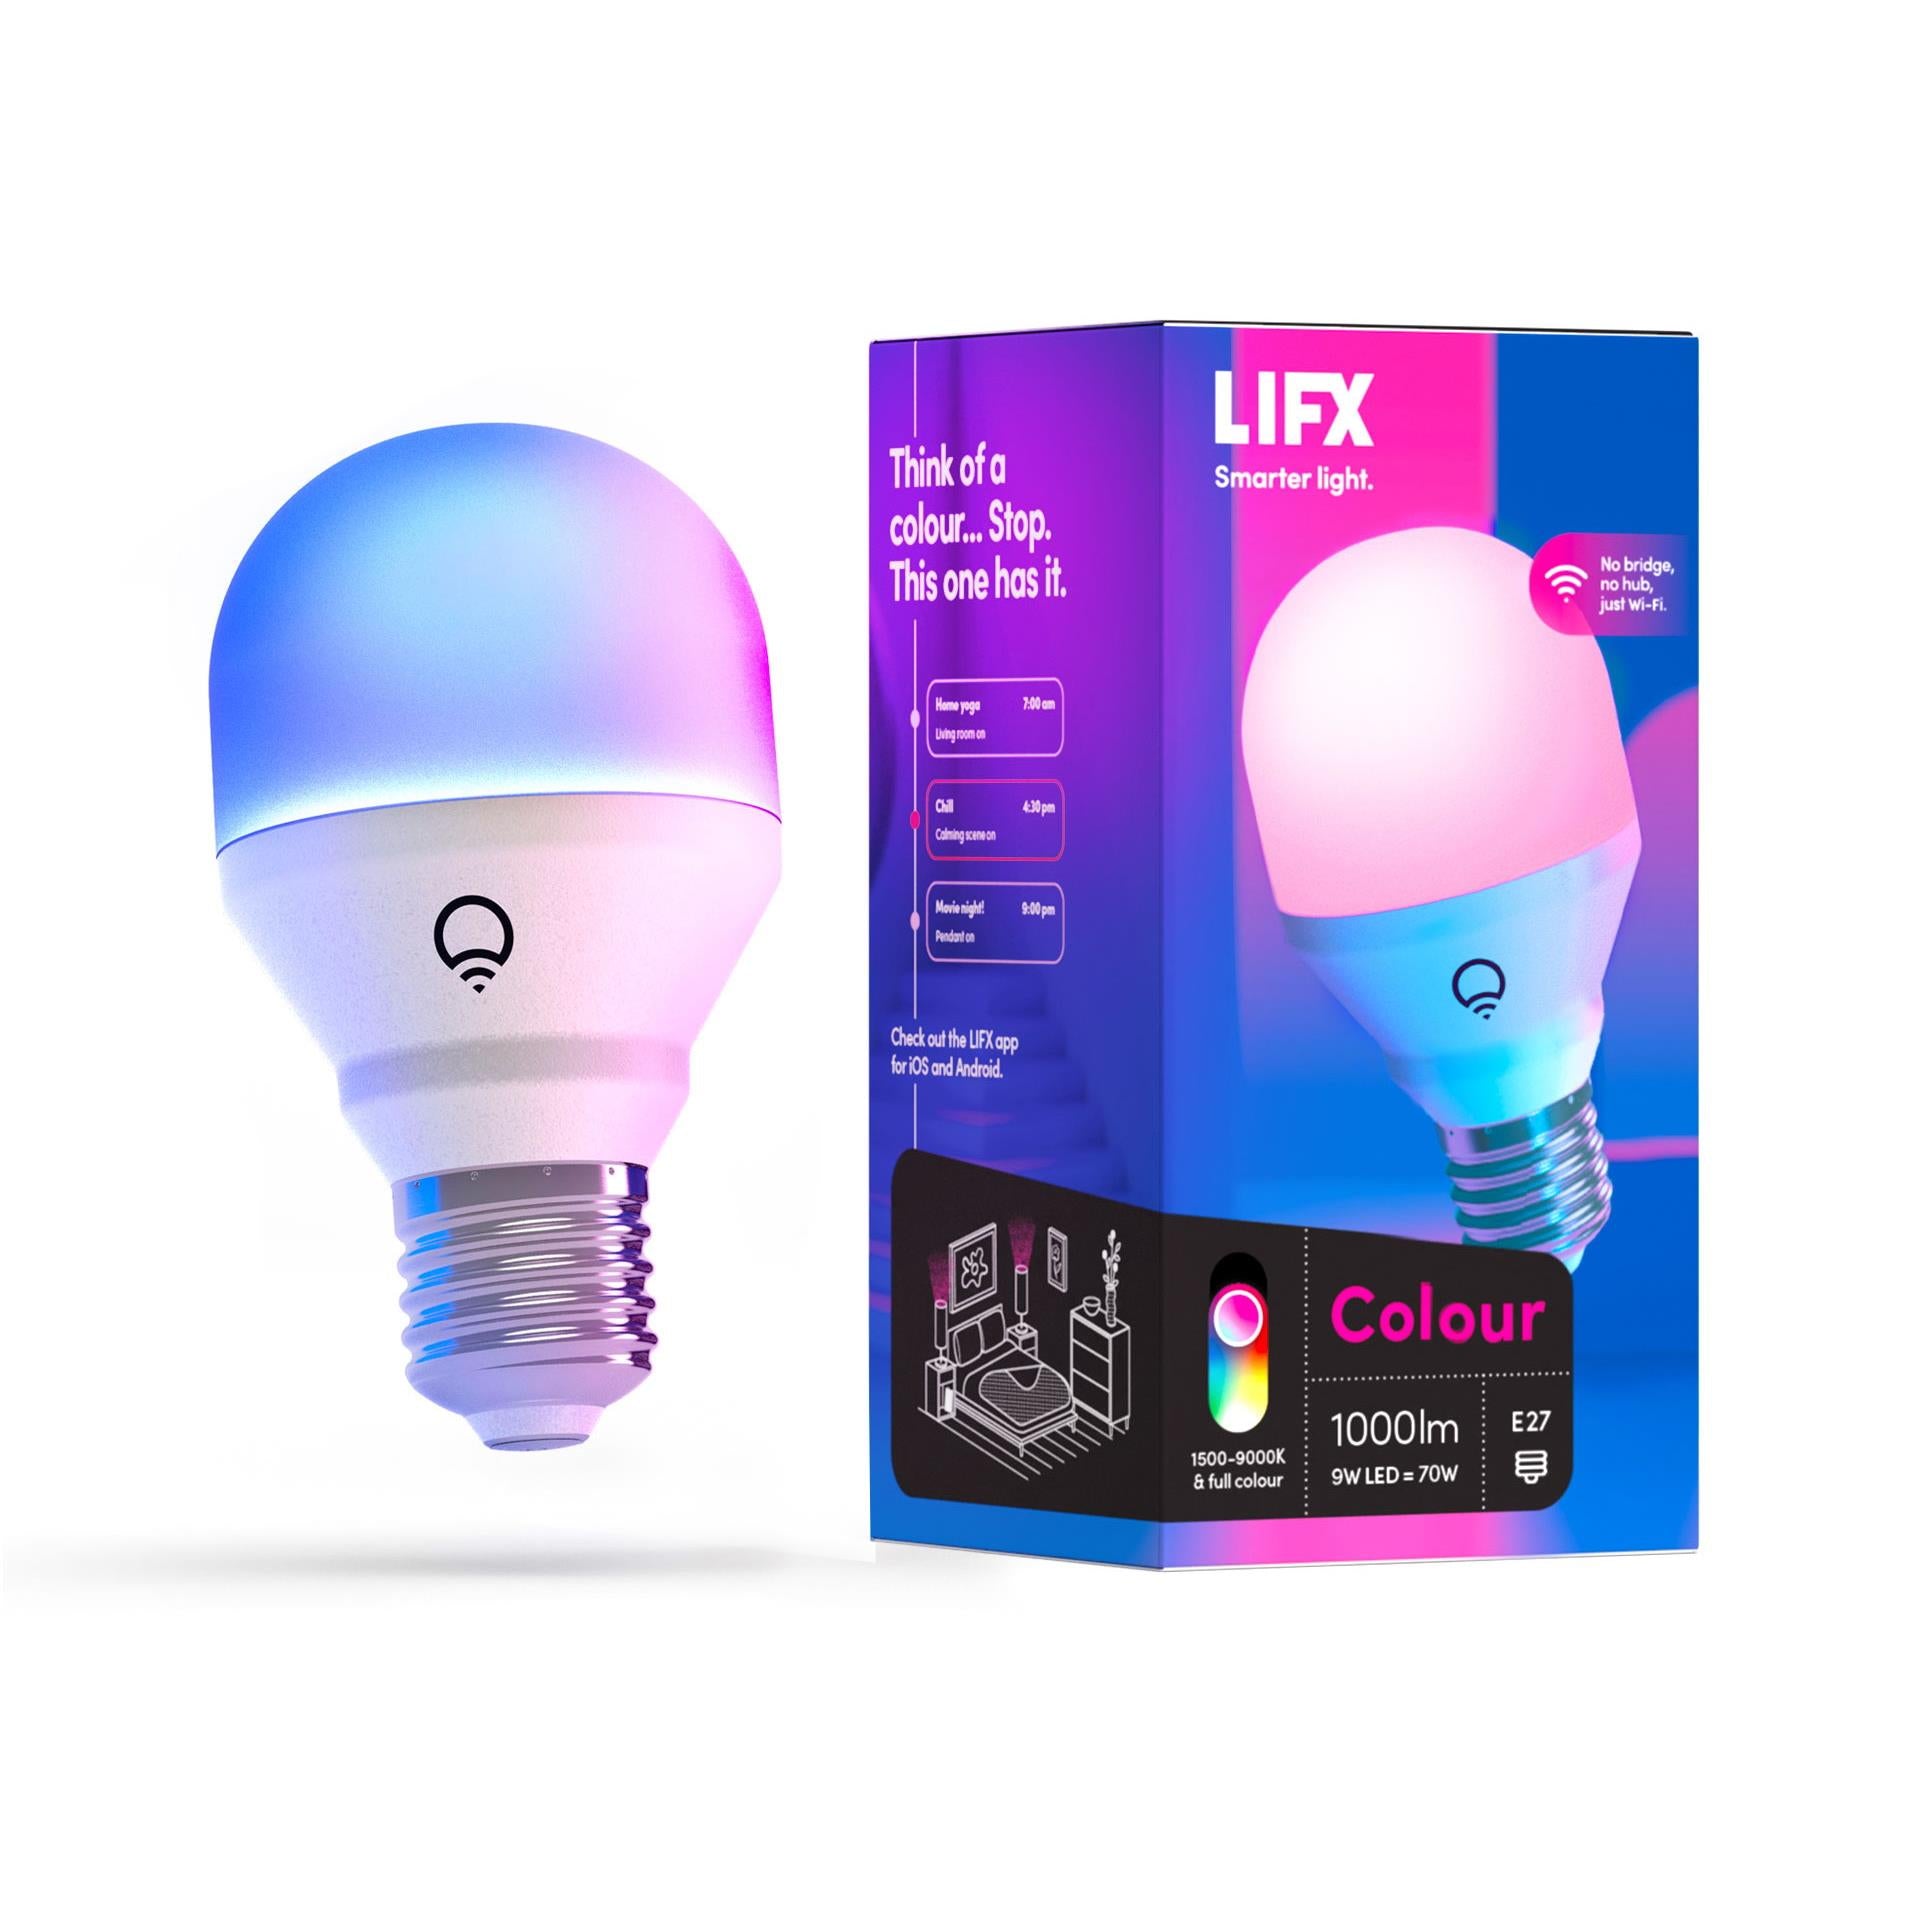 LIFX Colour A60 1000lm E27 Smart Bulb JB Hi-Fi